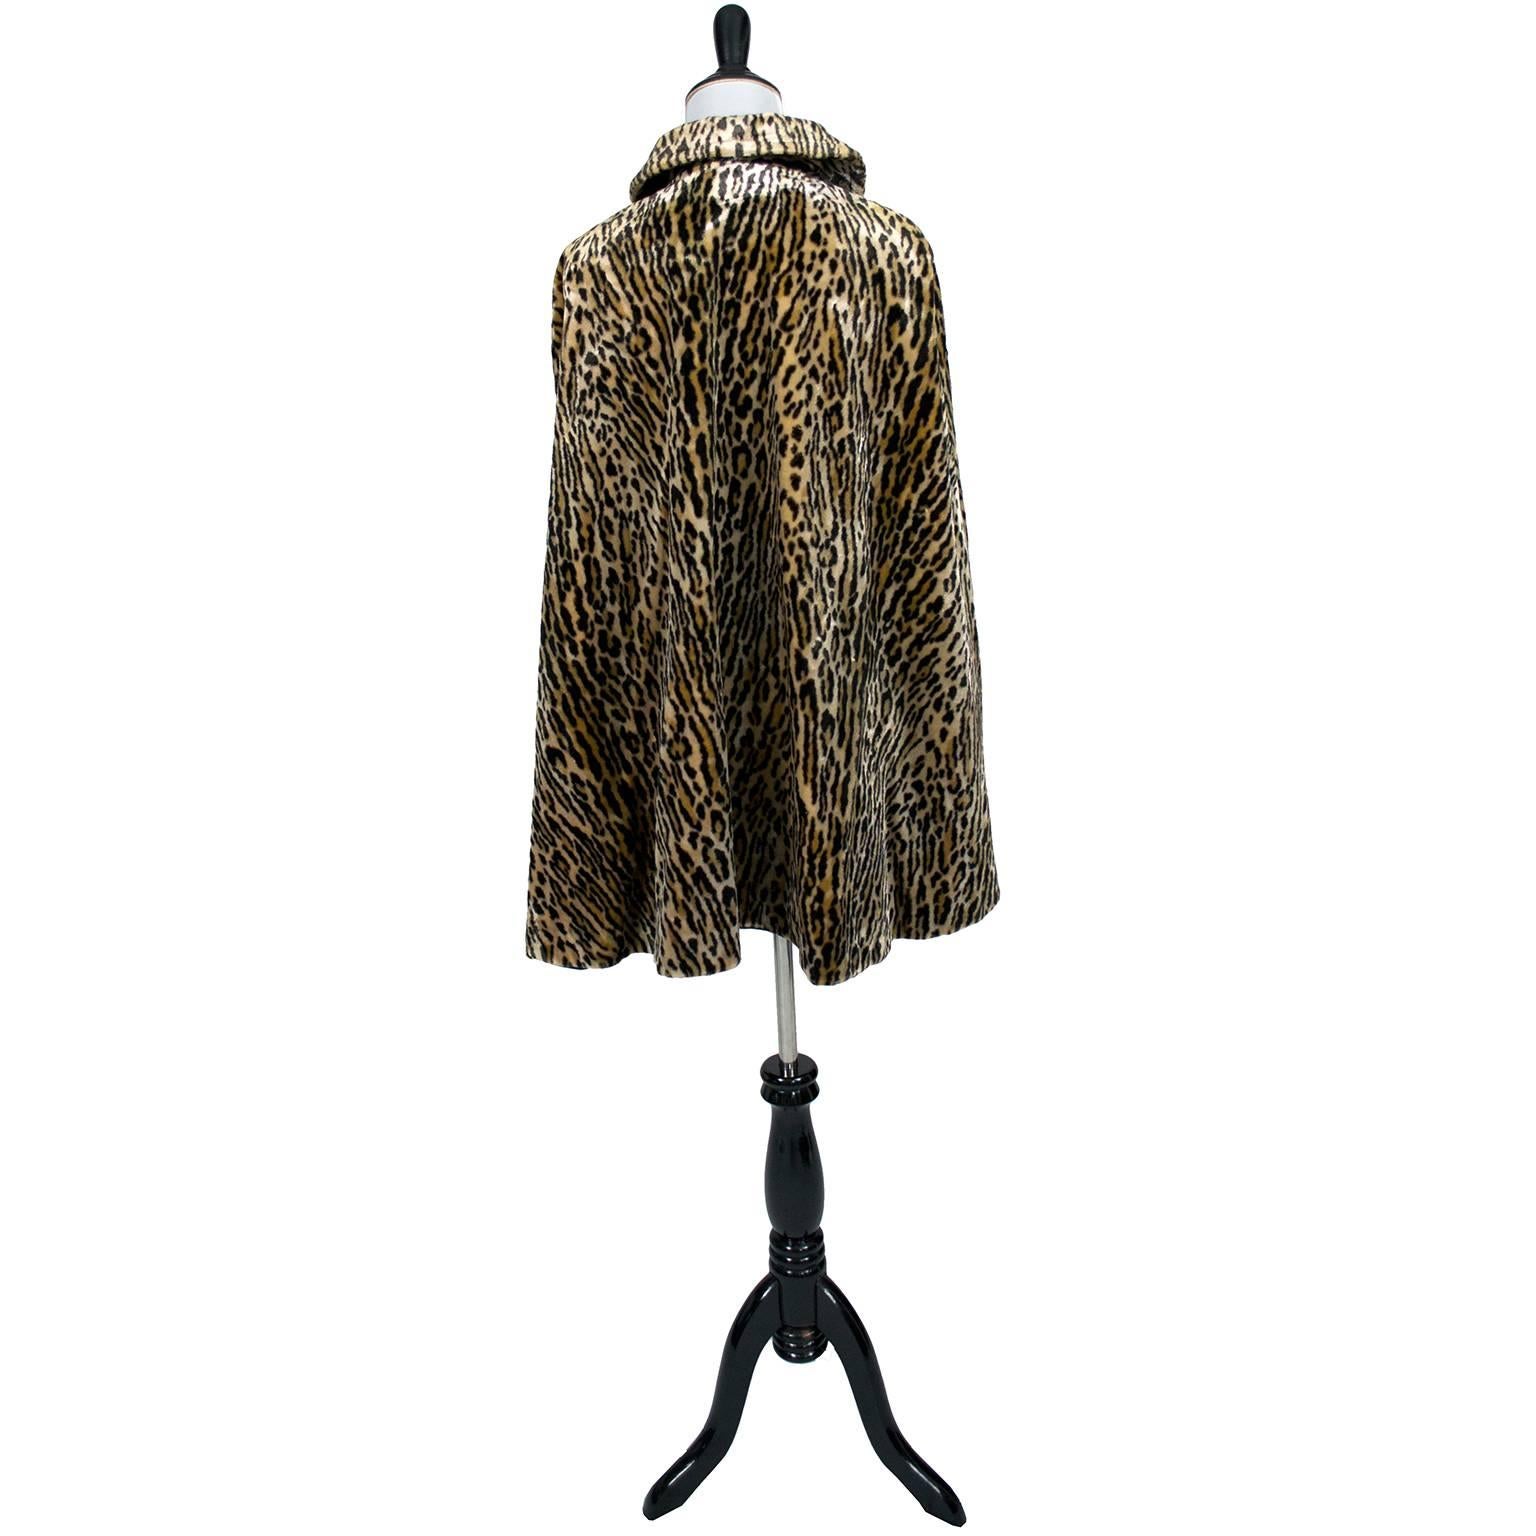 Harolde's Vintage Leopard Faux Fur Cape 1960s Chic Outerwear S/M 1